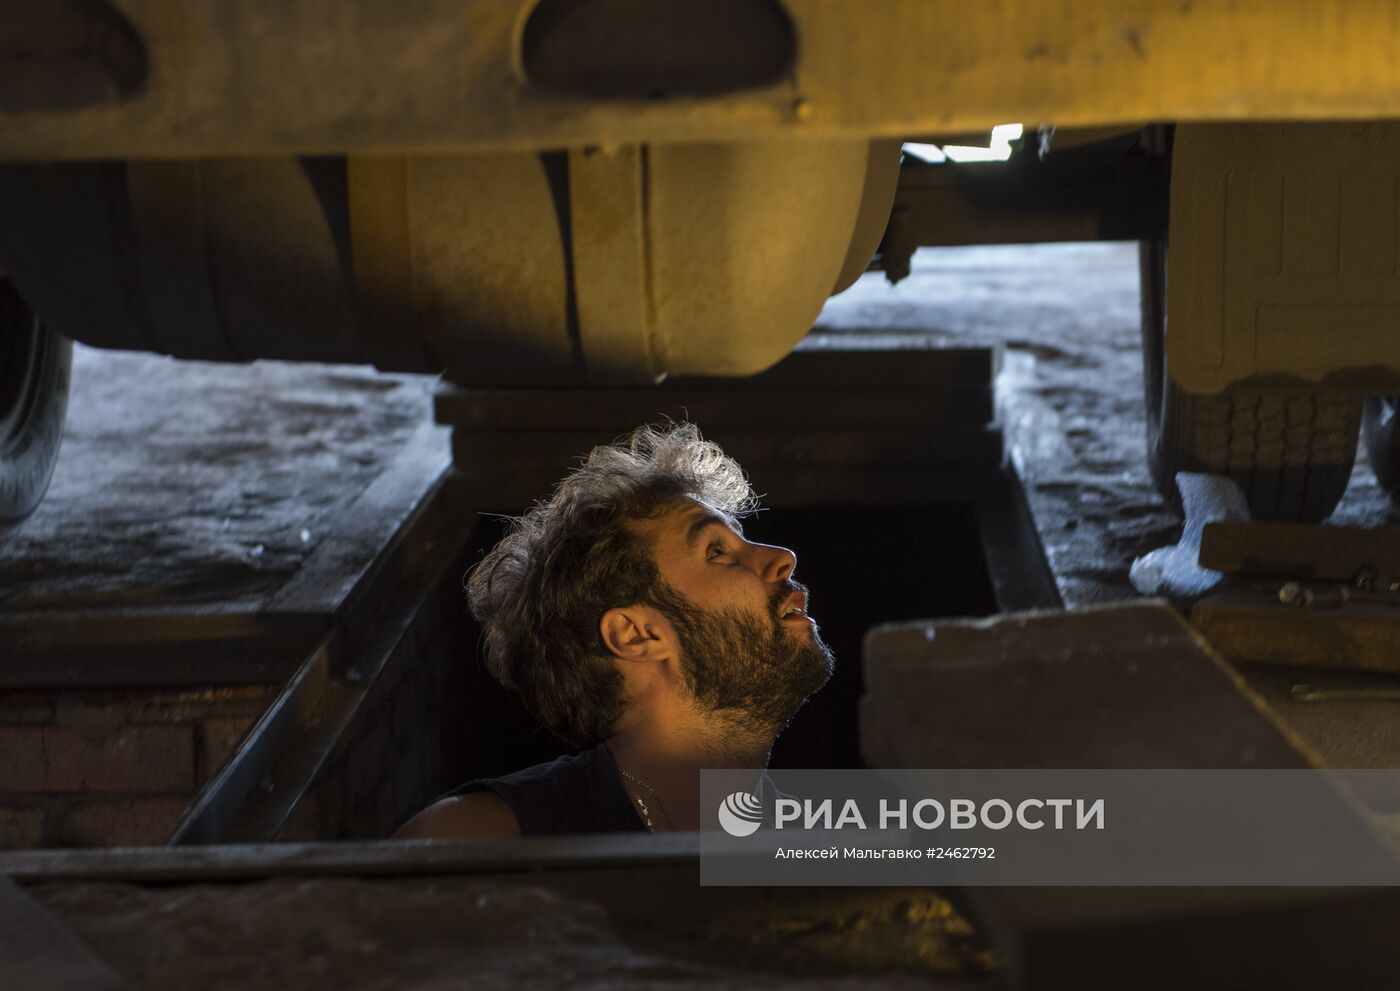 Работа водителя маршрутного такси в Омске